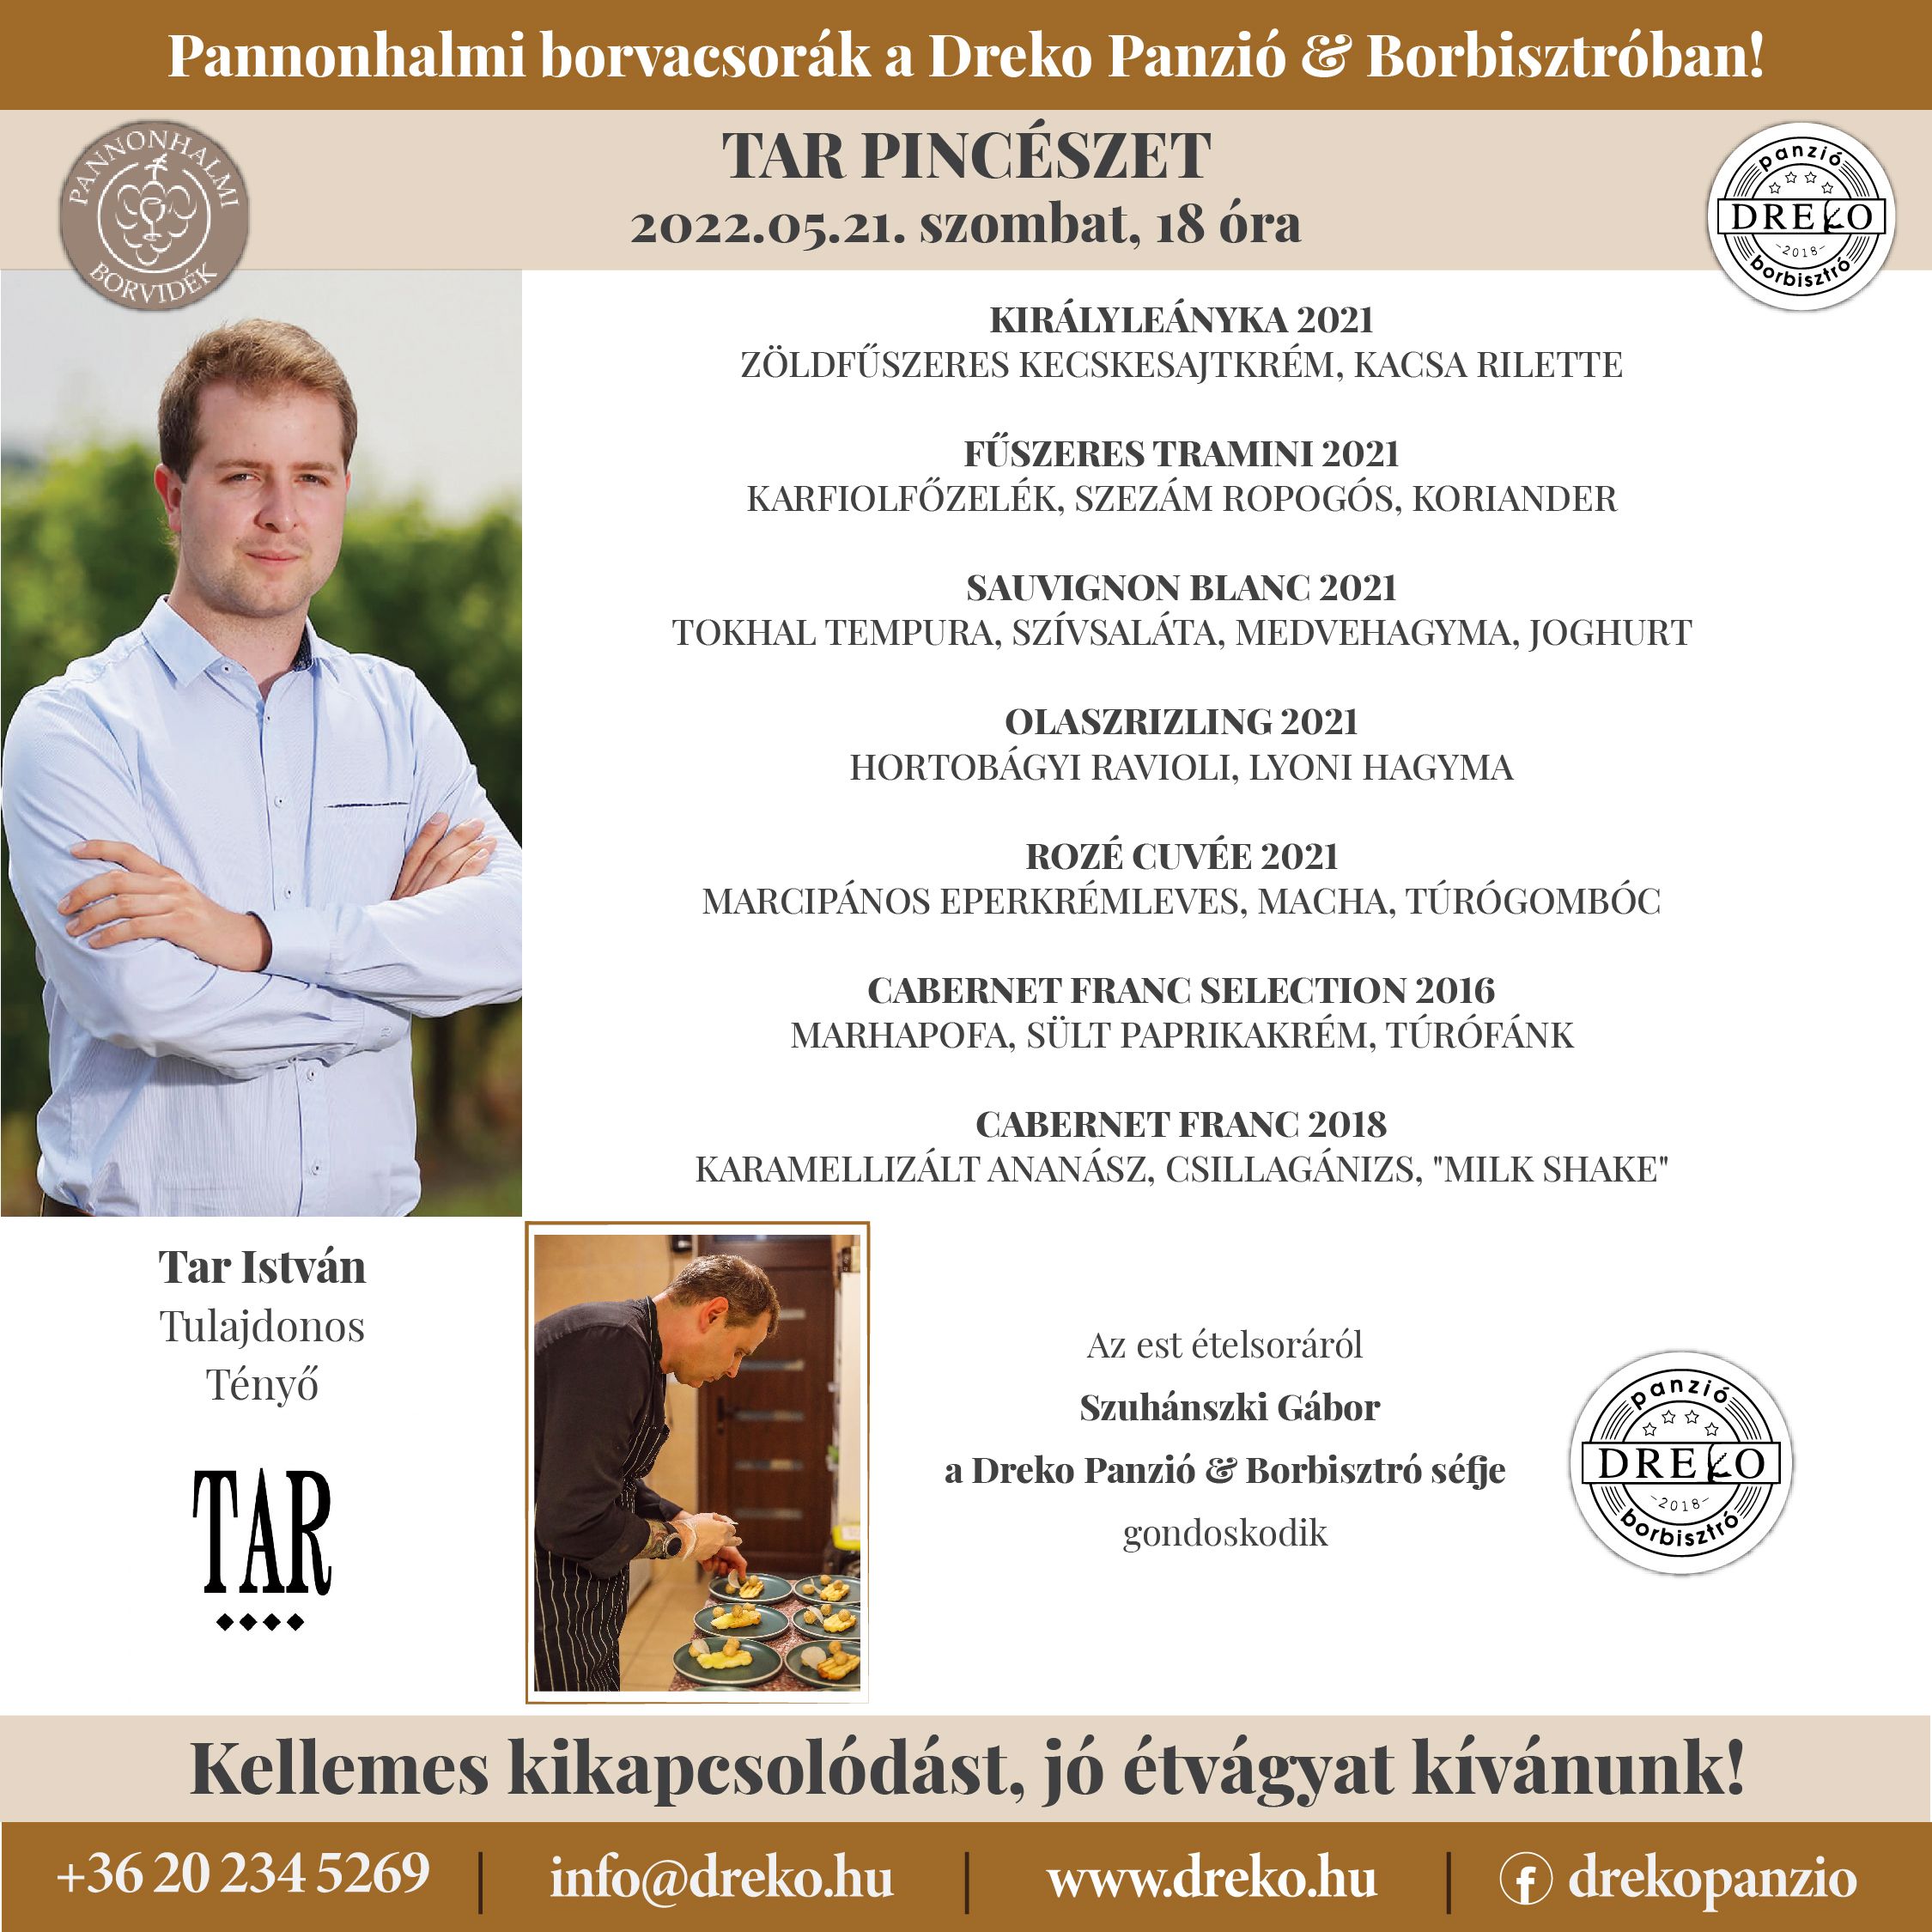 Tar Pincészet borvacsora a Dreko Panzió & Borbisztróban 2022.05.21 18:00